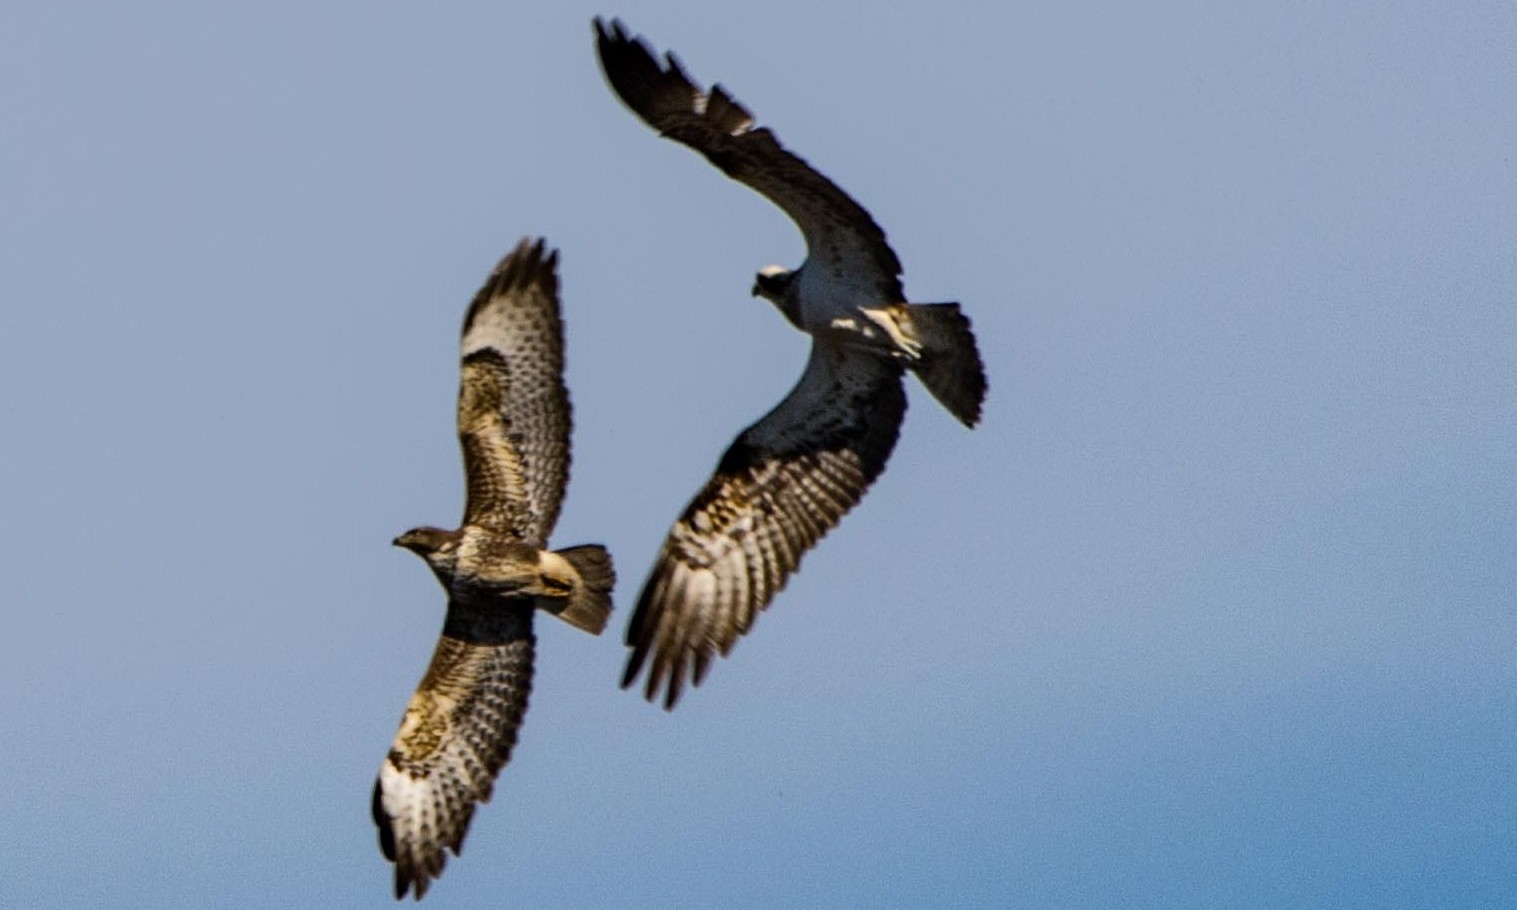 A female osprey chasing off a buzzard